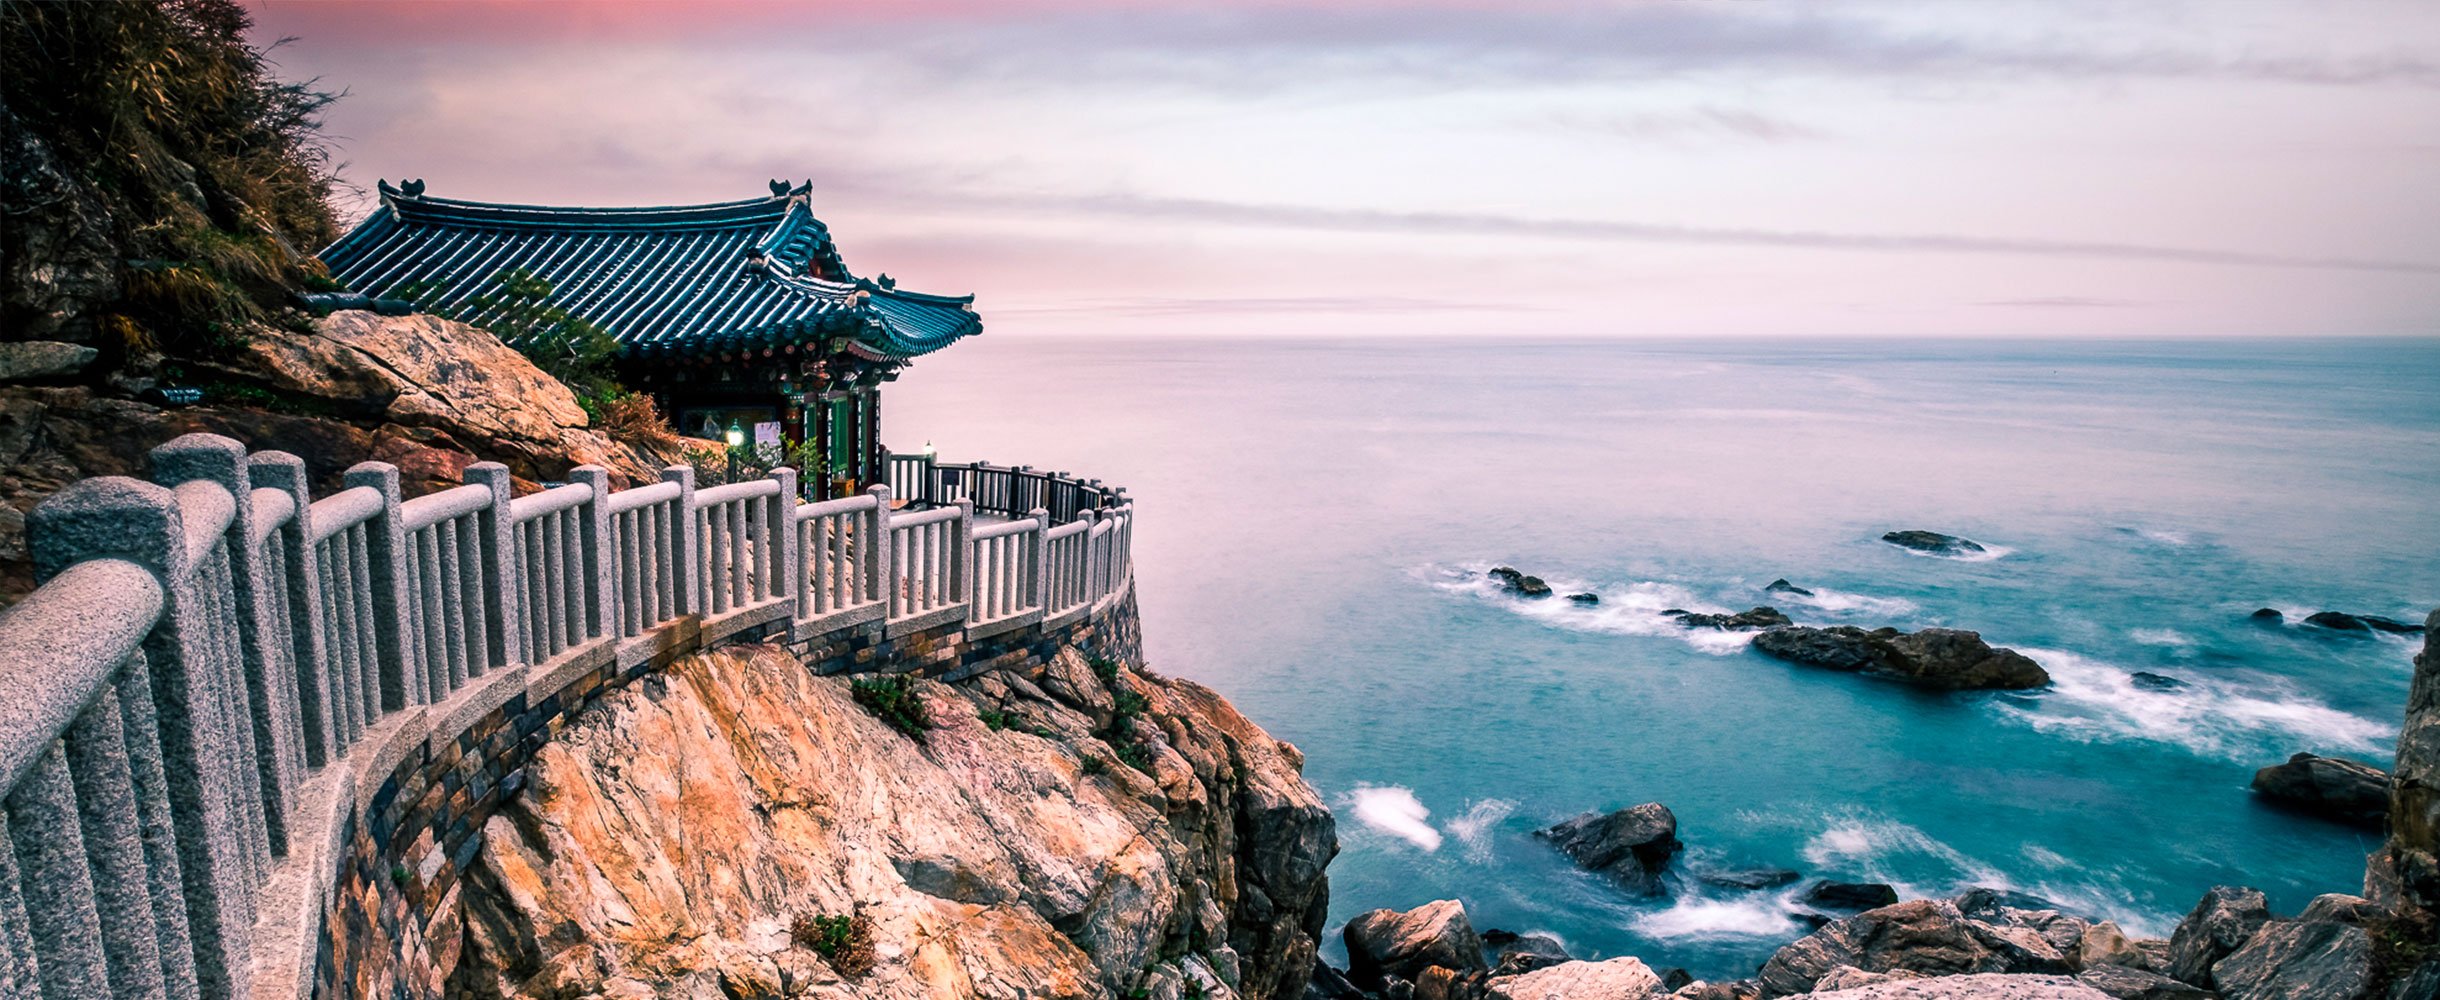 Le littoral sur la couverture du guide PVT Corée du Sud